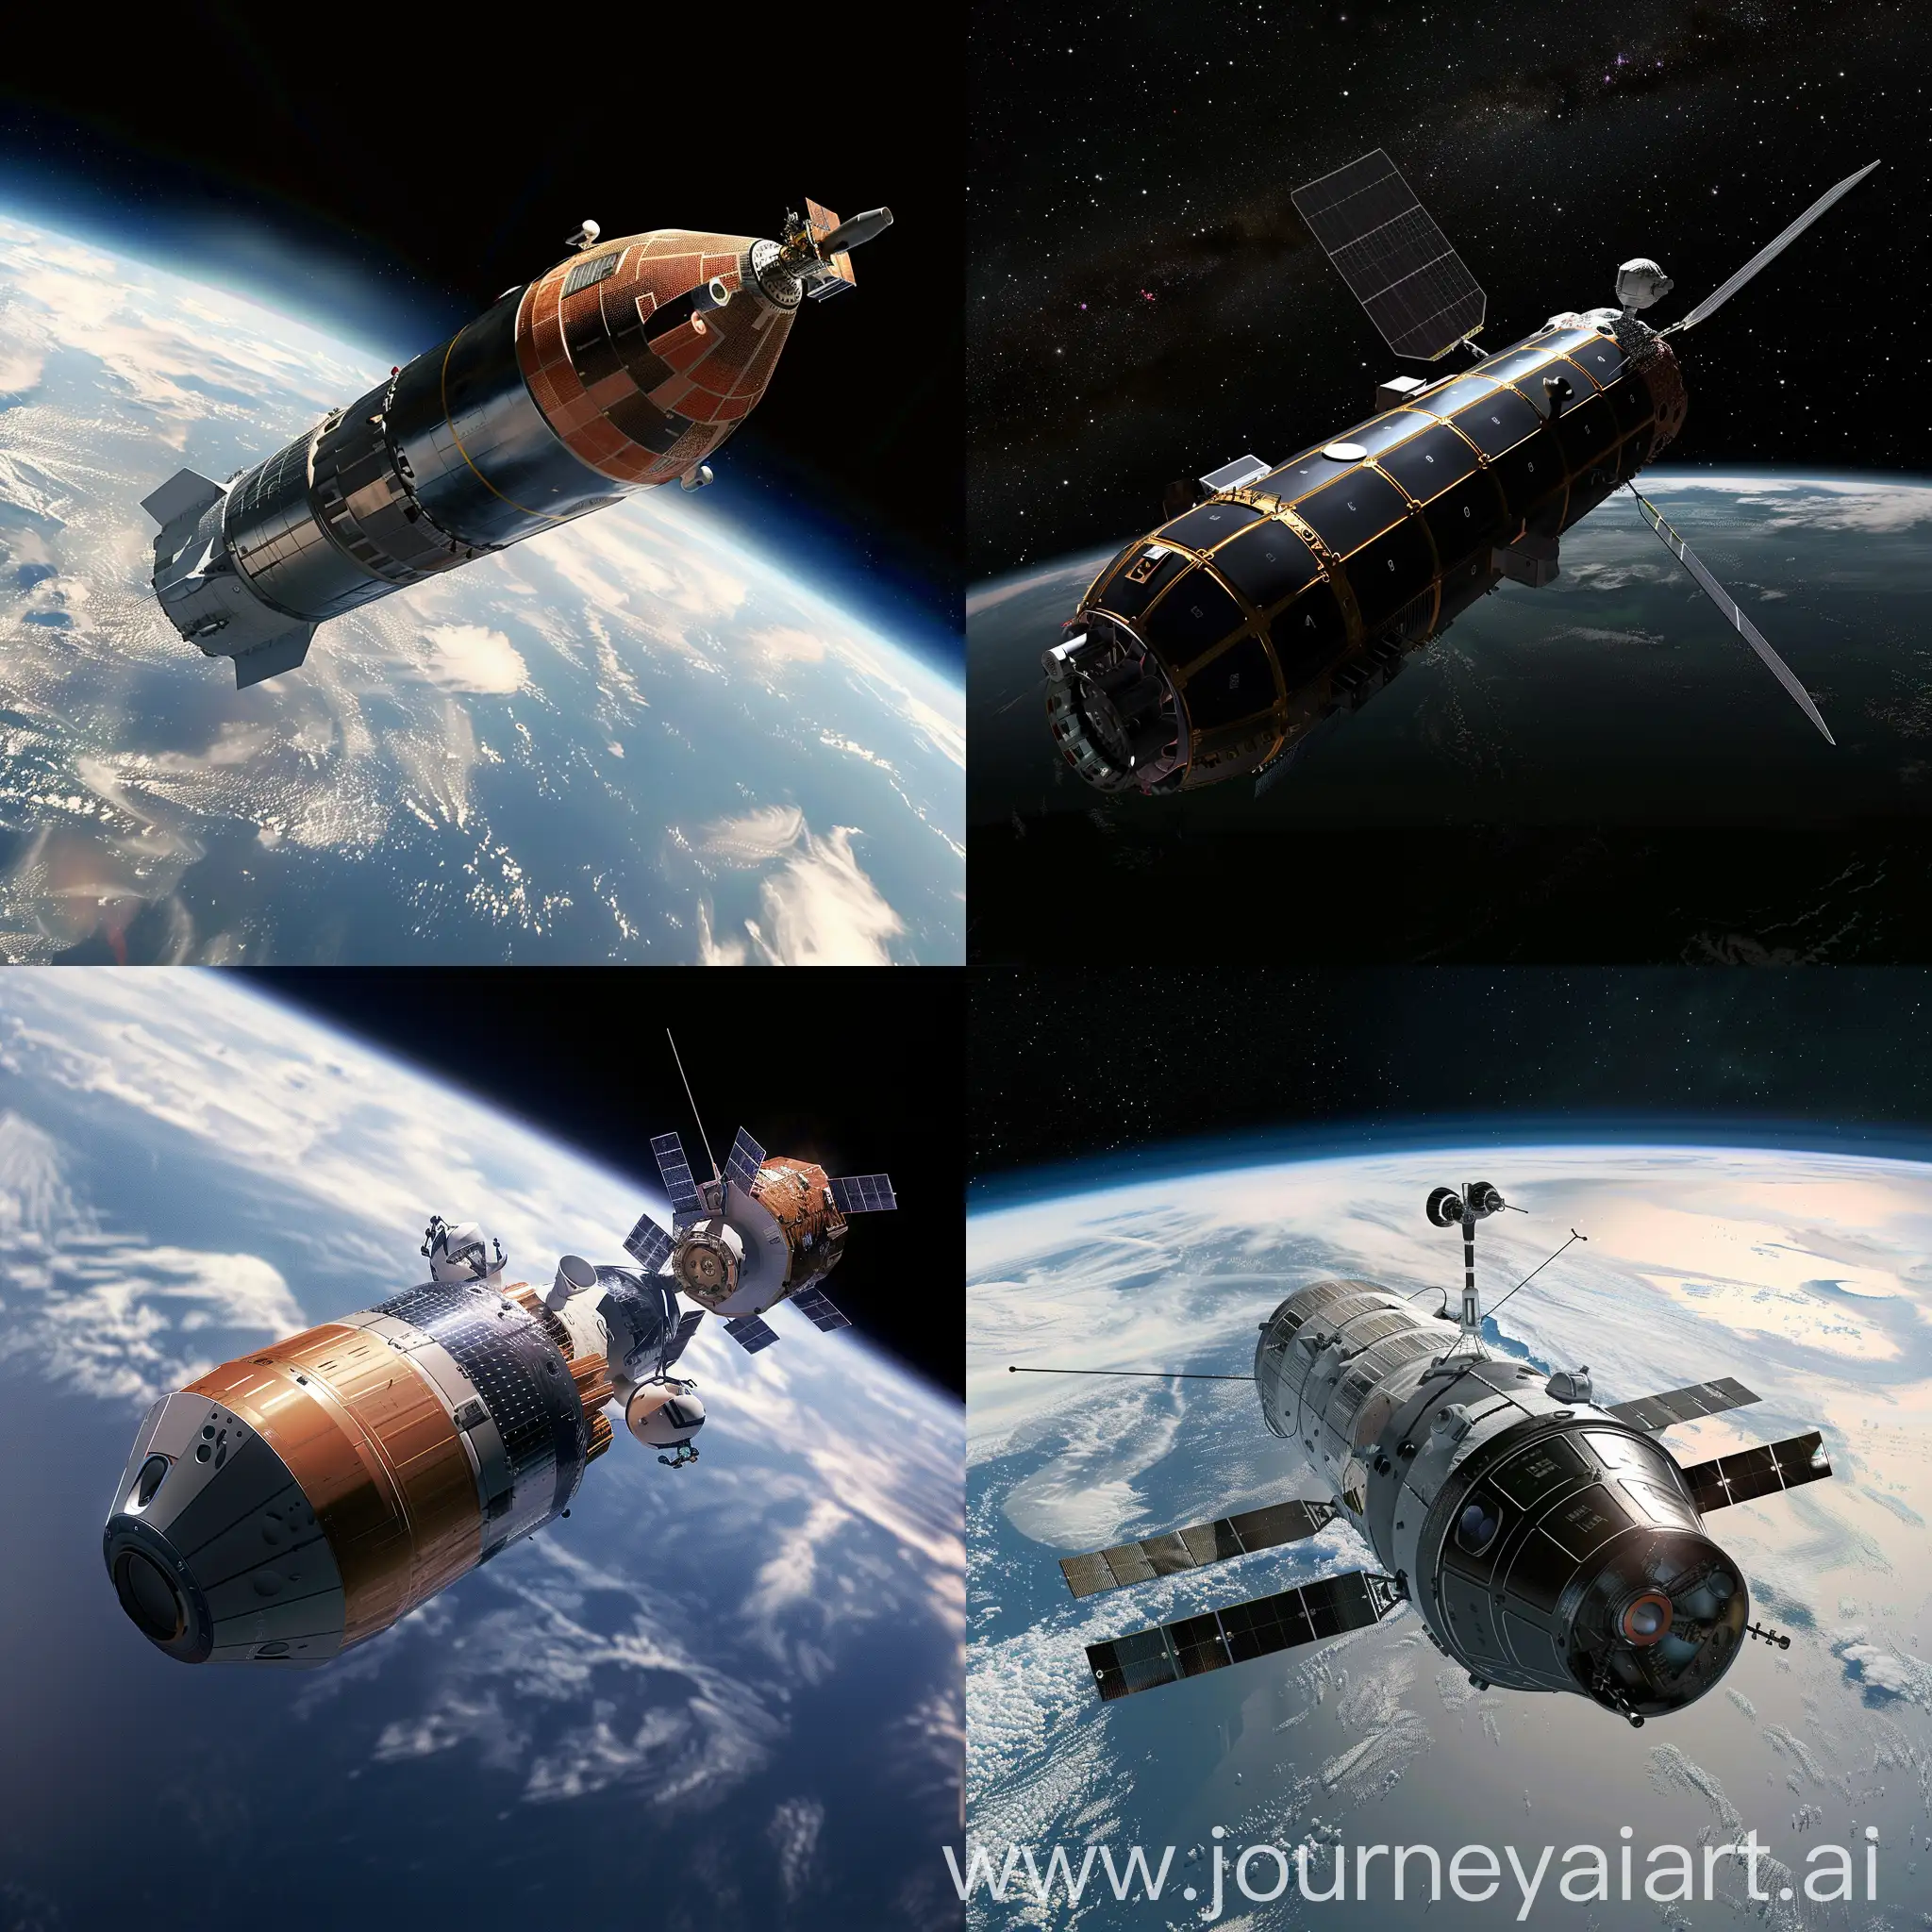 Futuristic-Spacecraft-Exploration-Mission